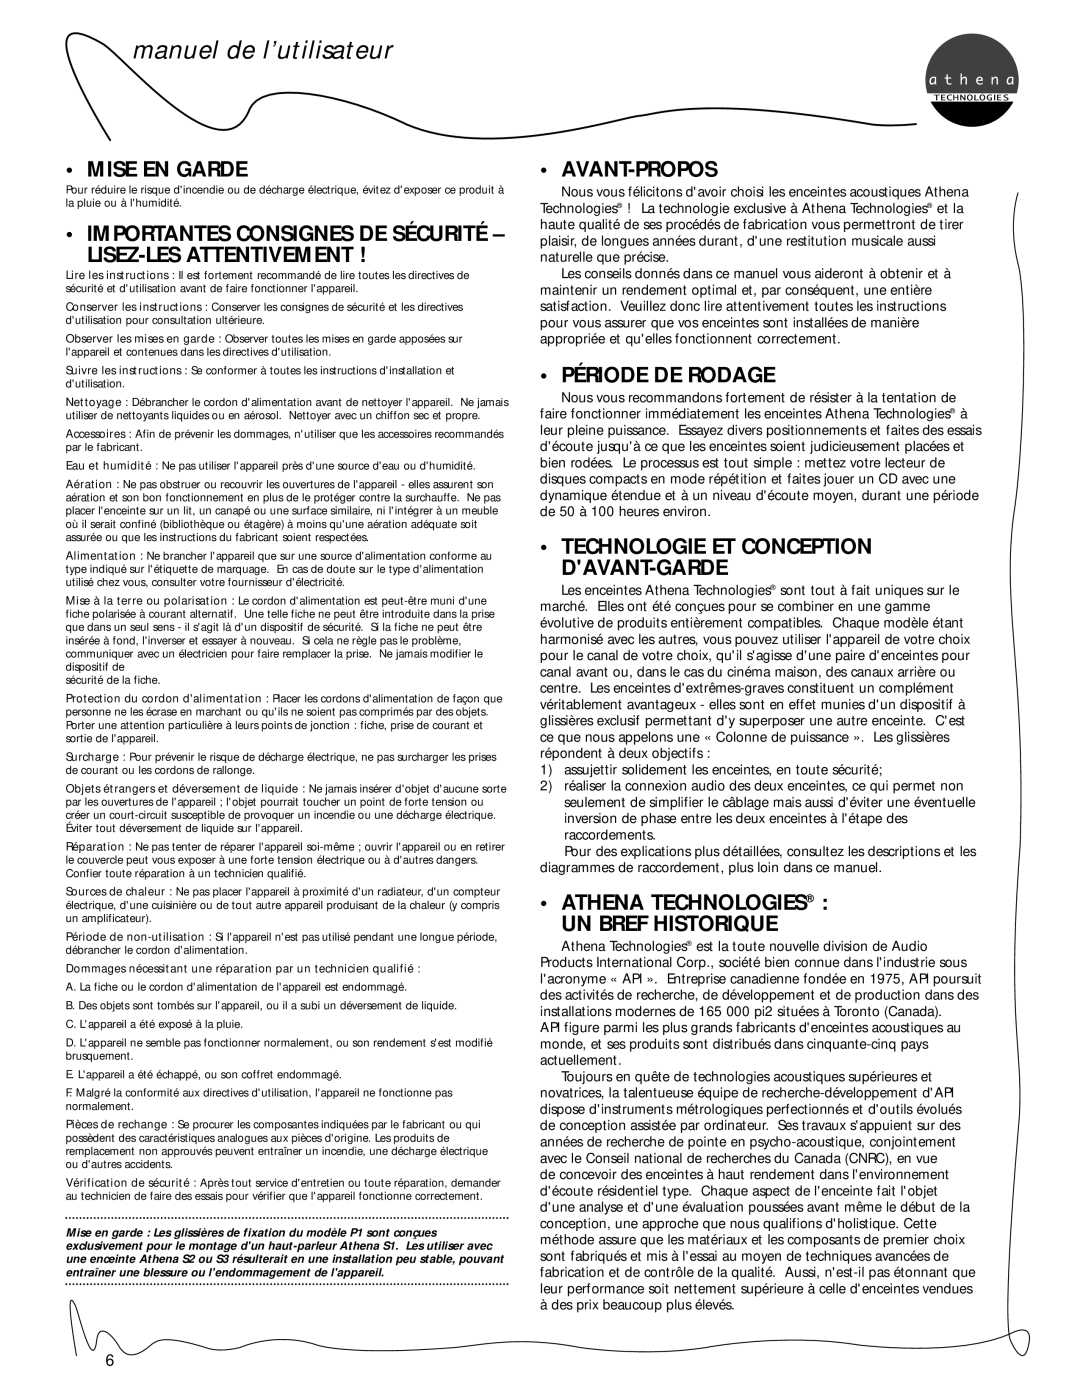 Athena Technologies C1, S3 manuel de l’utilisateur, Mise En Garde, Lisez-Lesattentivement, Avant-Propos, Période De Rodage 